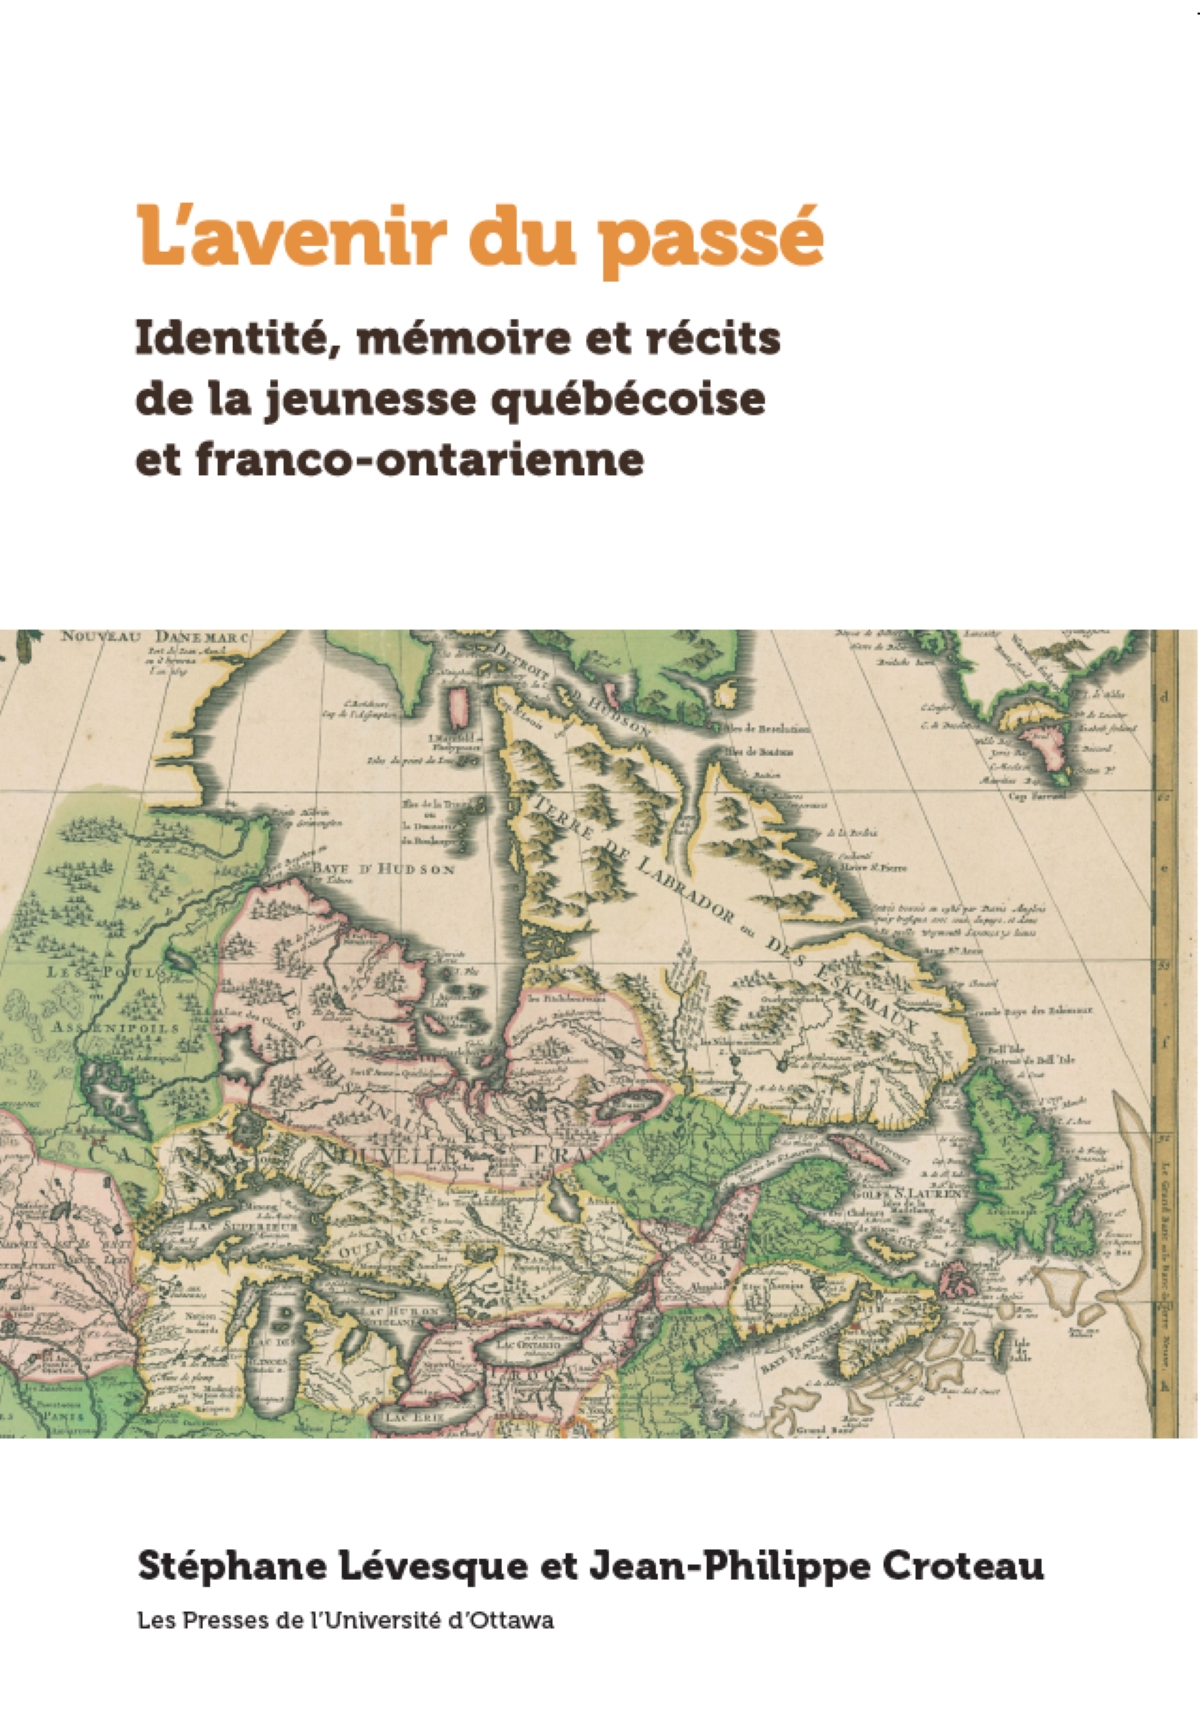 Couverture du livre L'avenir du passé avec une carte ancienne dans des teintes de vert, de rose et de jaune.